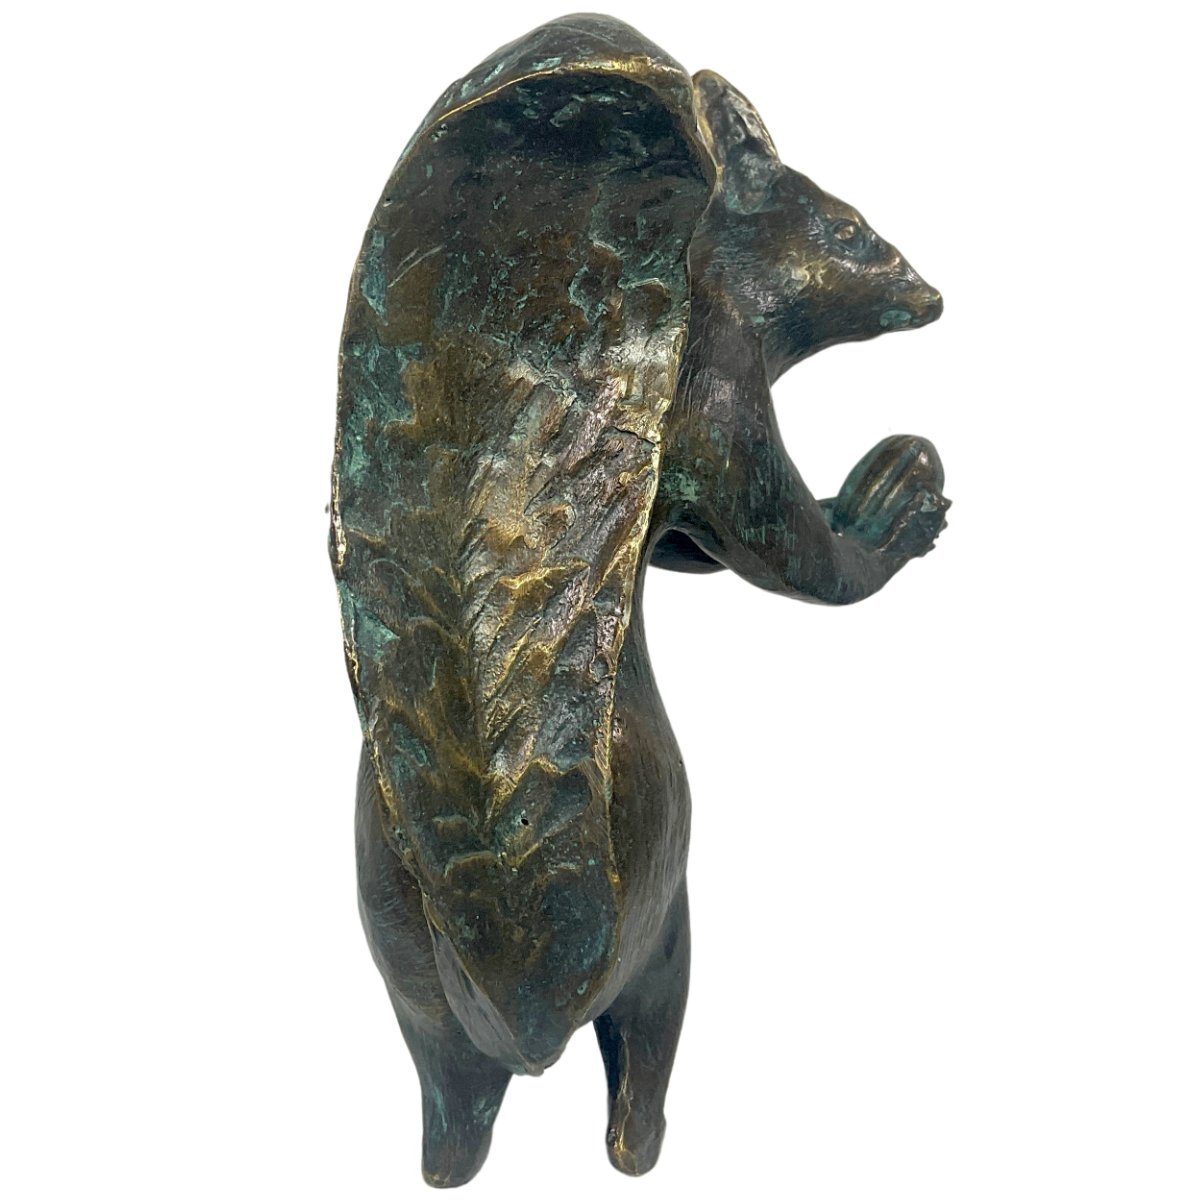 IDYL Bronzeskulptur Rottenecker "Eichhörnchen mit Eichel" Gartenfigur